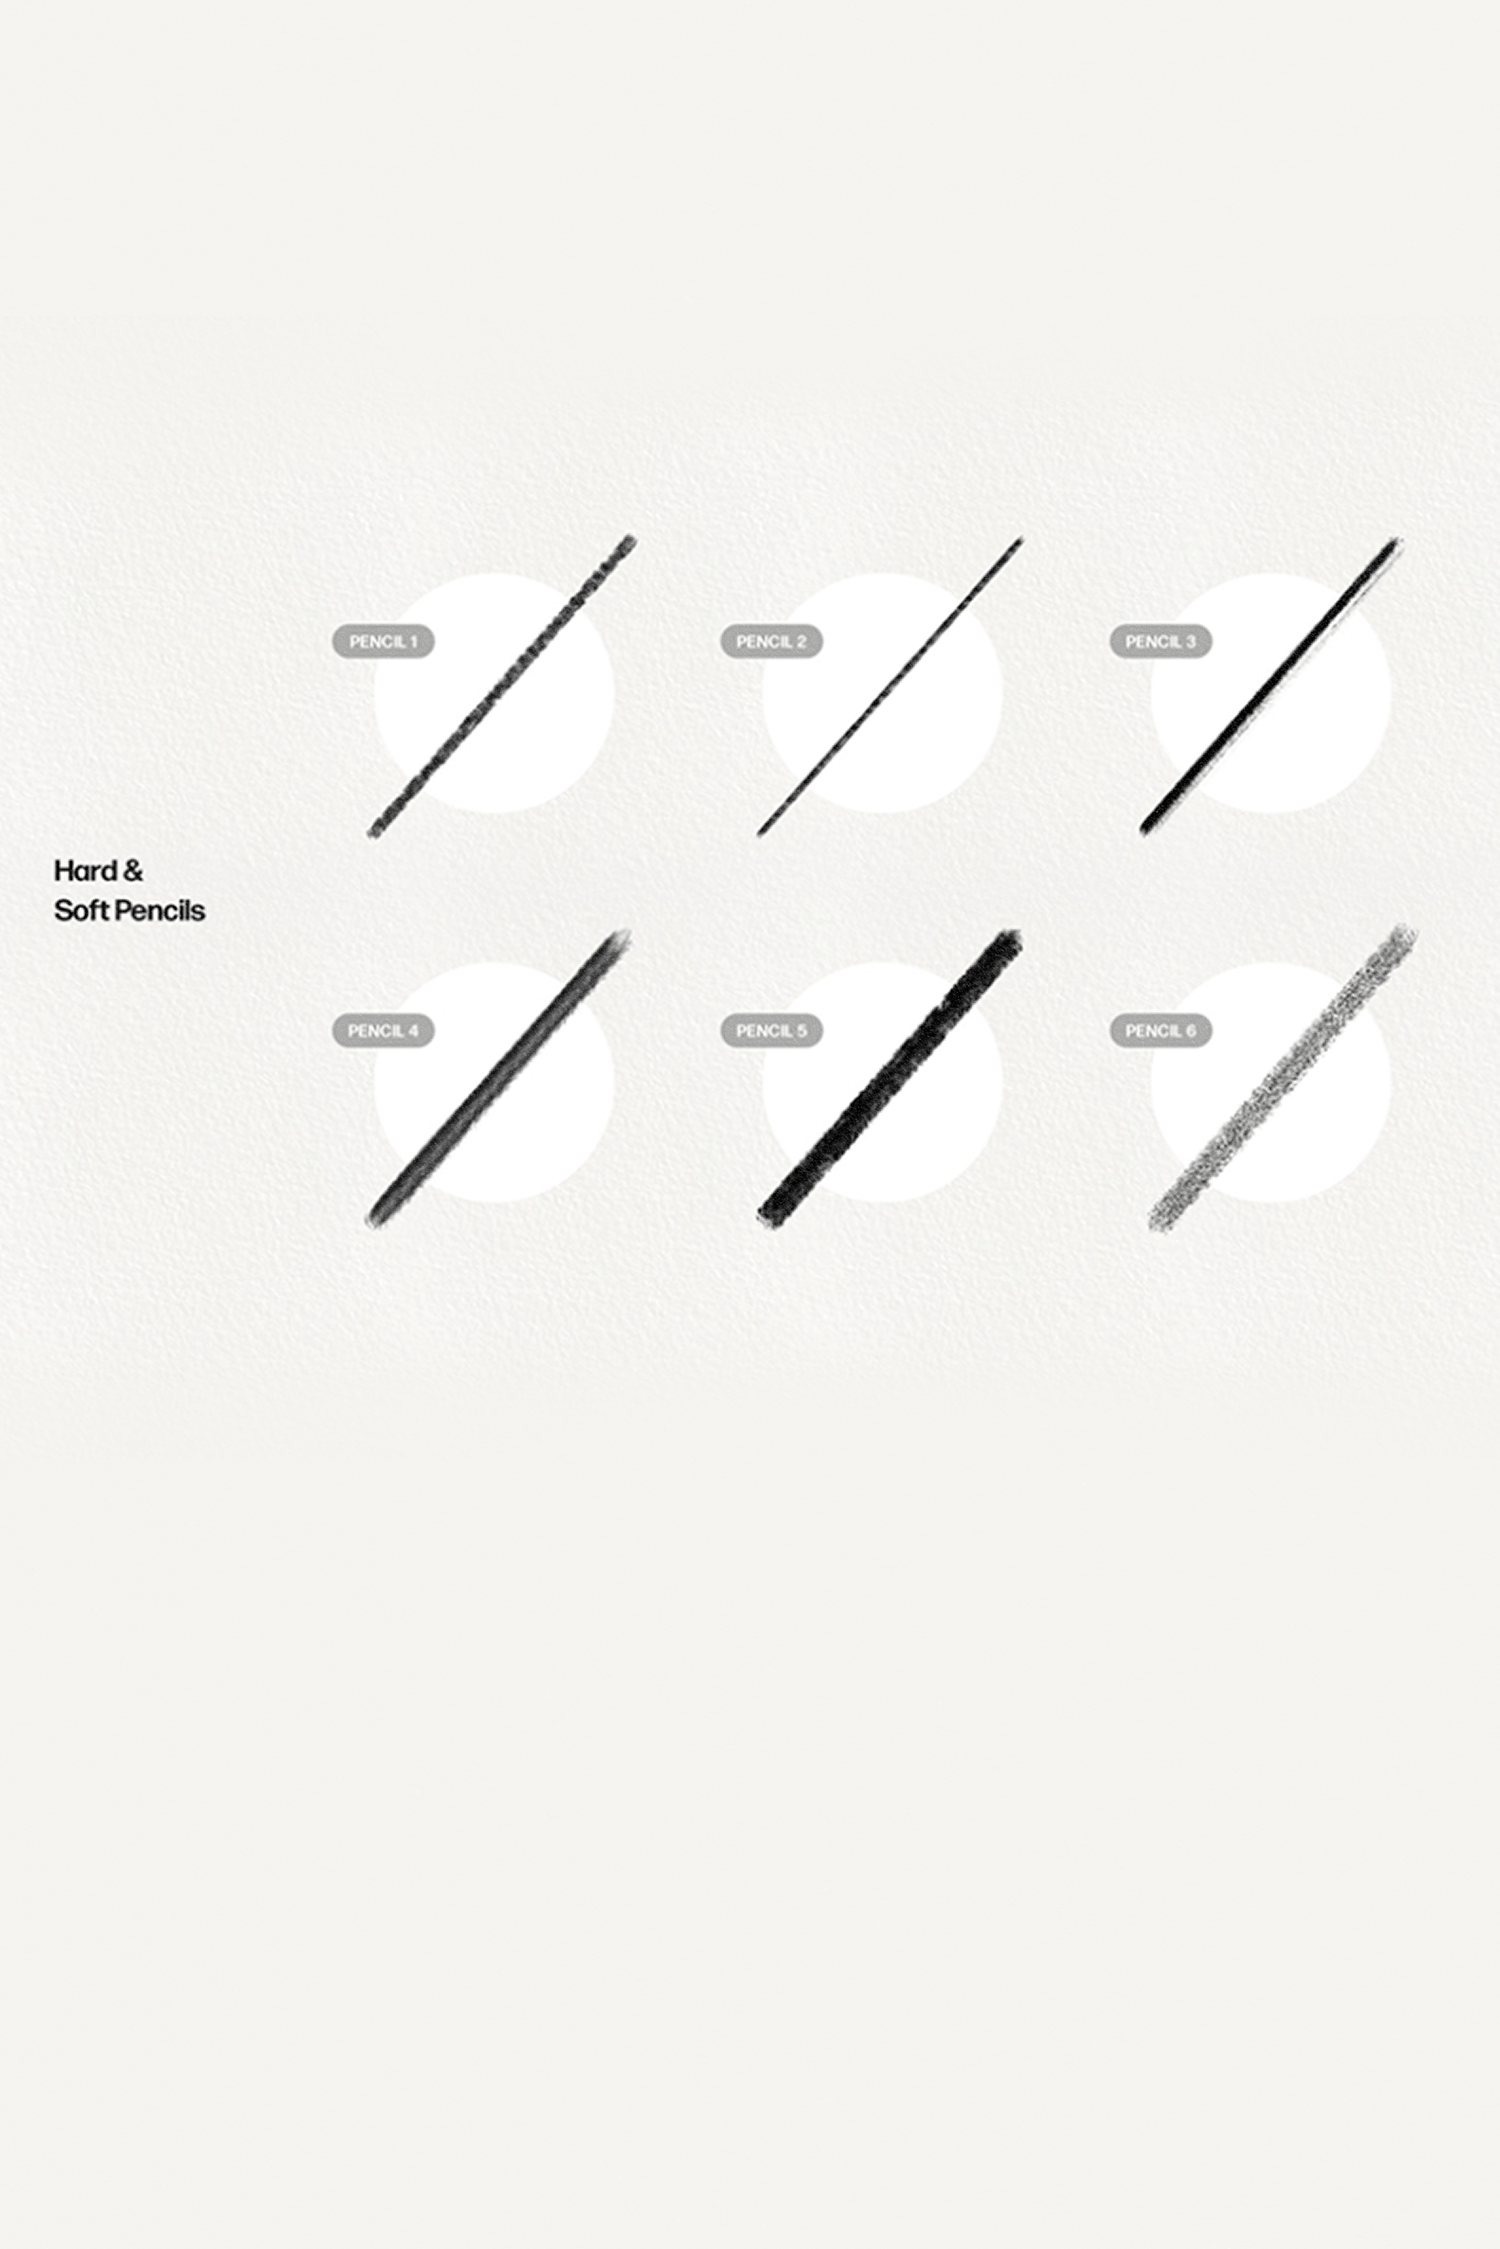 基本的な鉛筆ブラシ by PixelBuddha